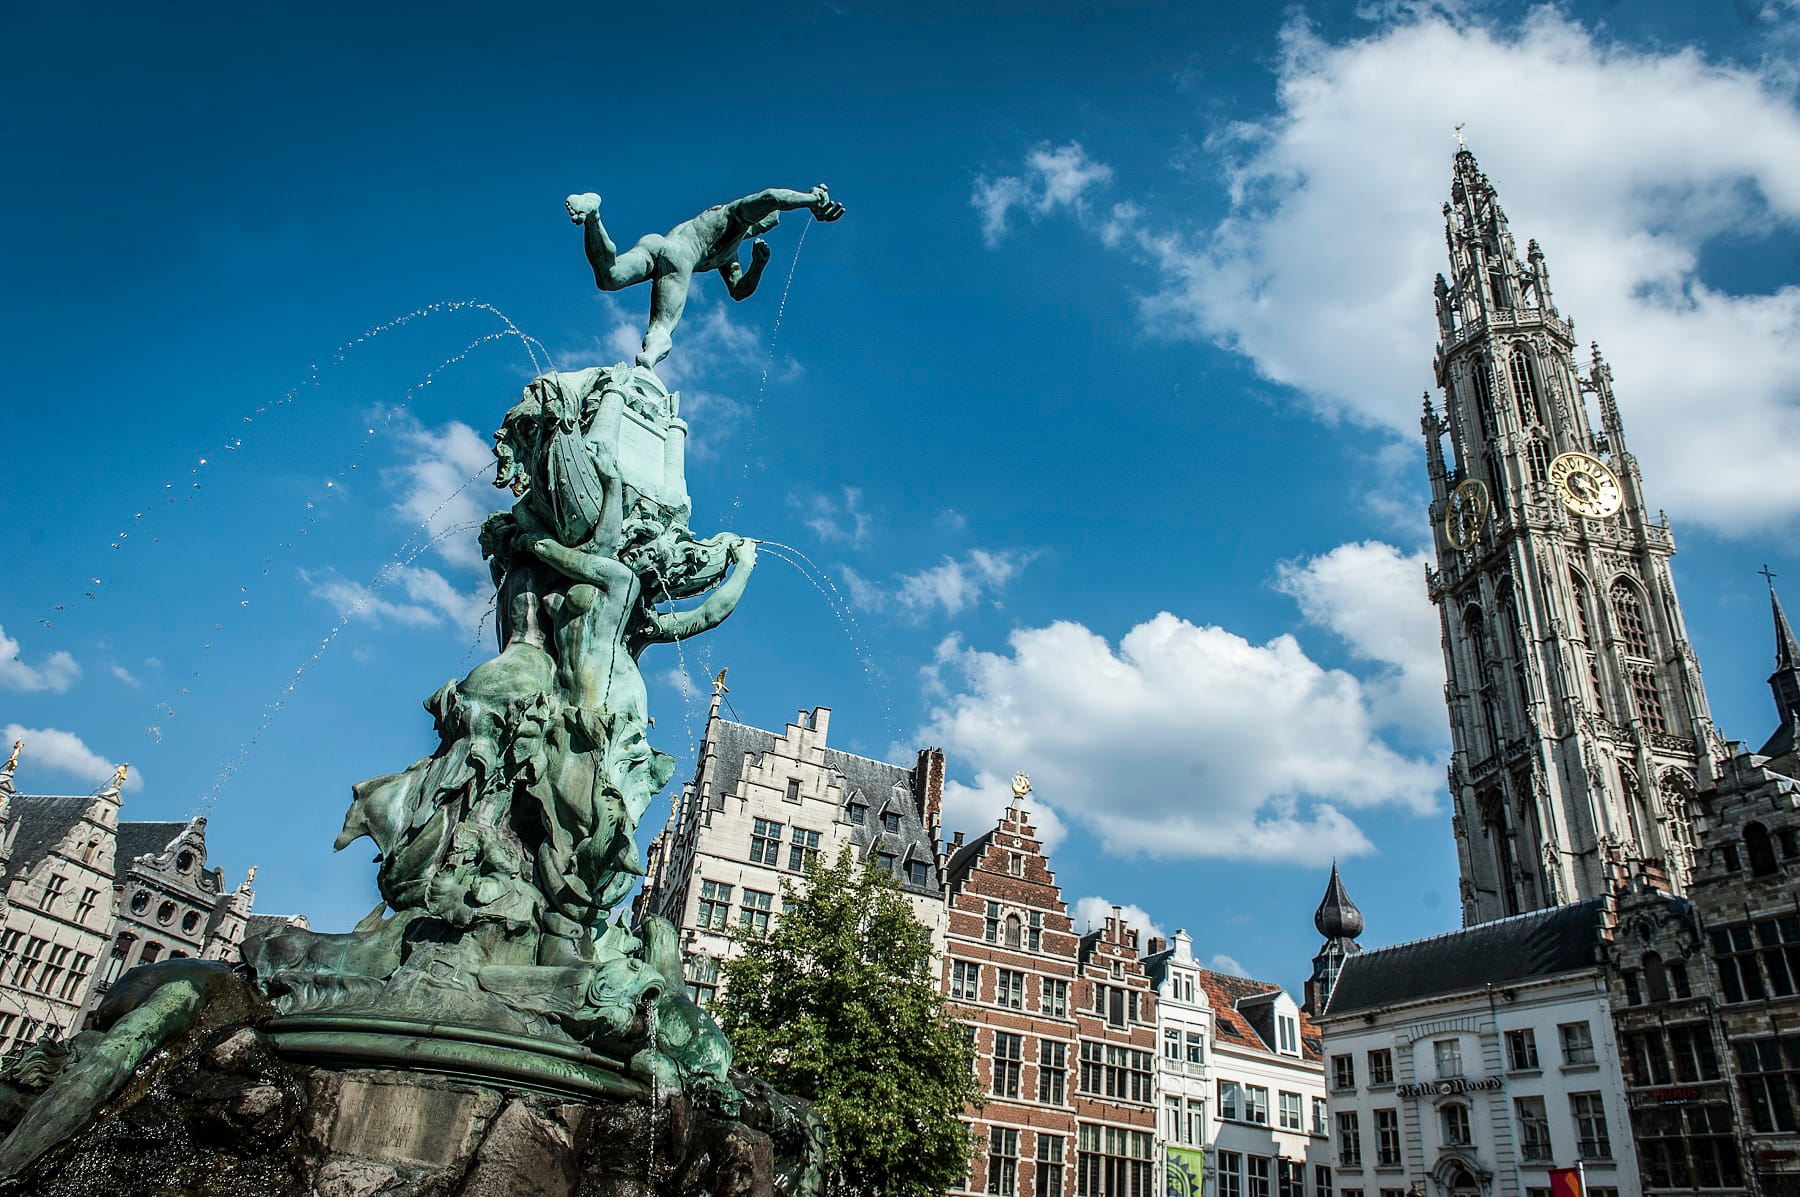 Grote Markt Antwerp